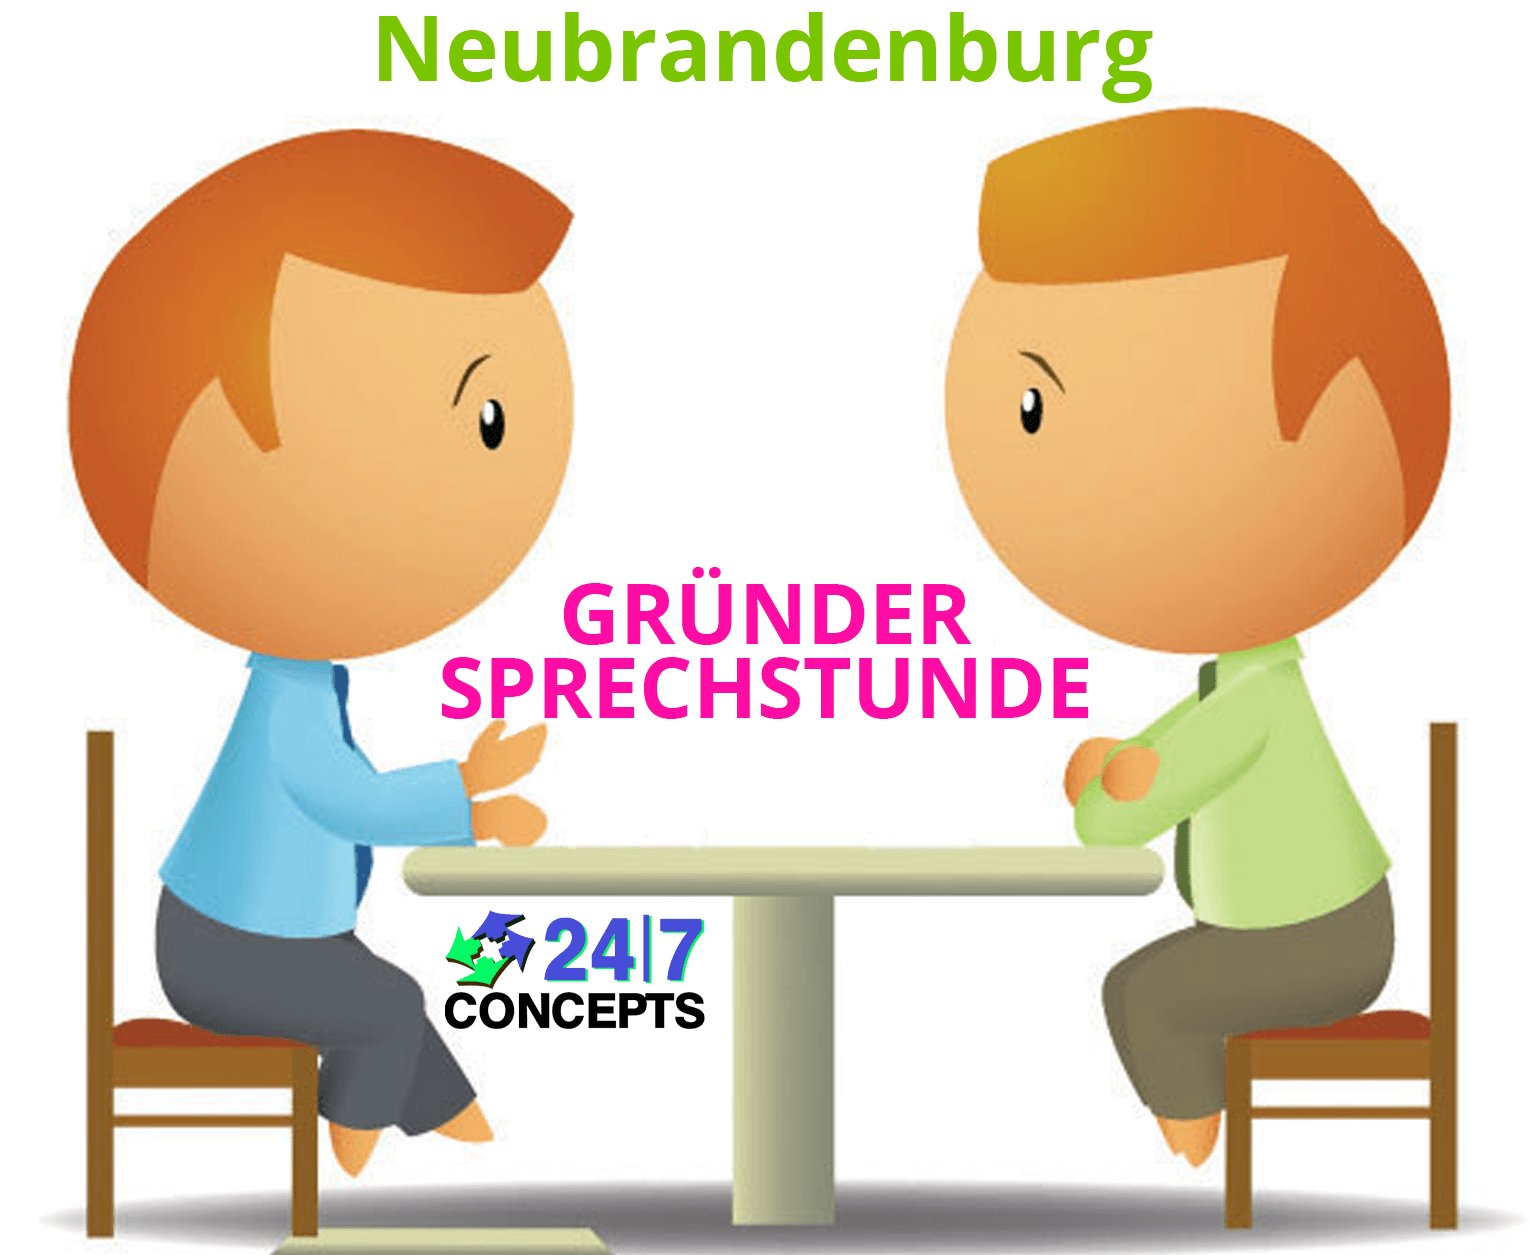 24/7 Concepts-gruendersprechstunde-neubrandenburg